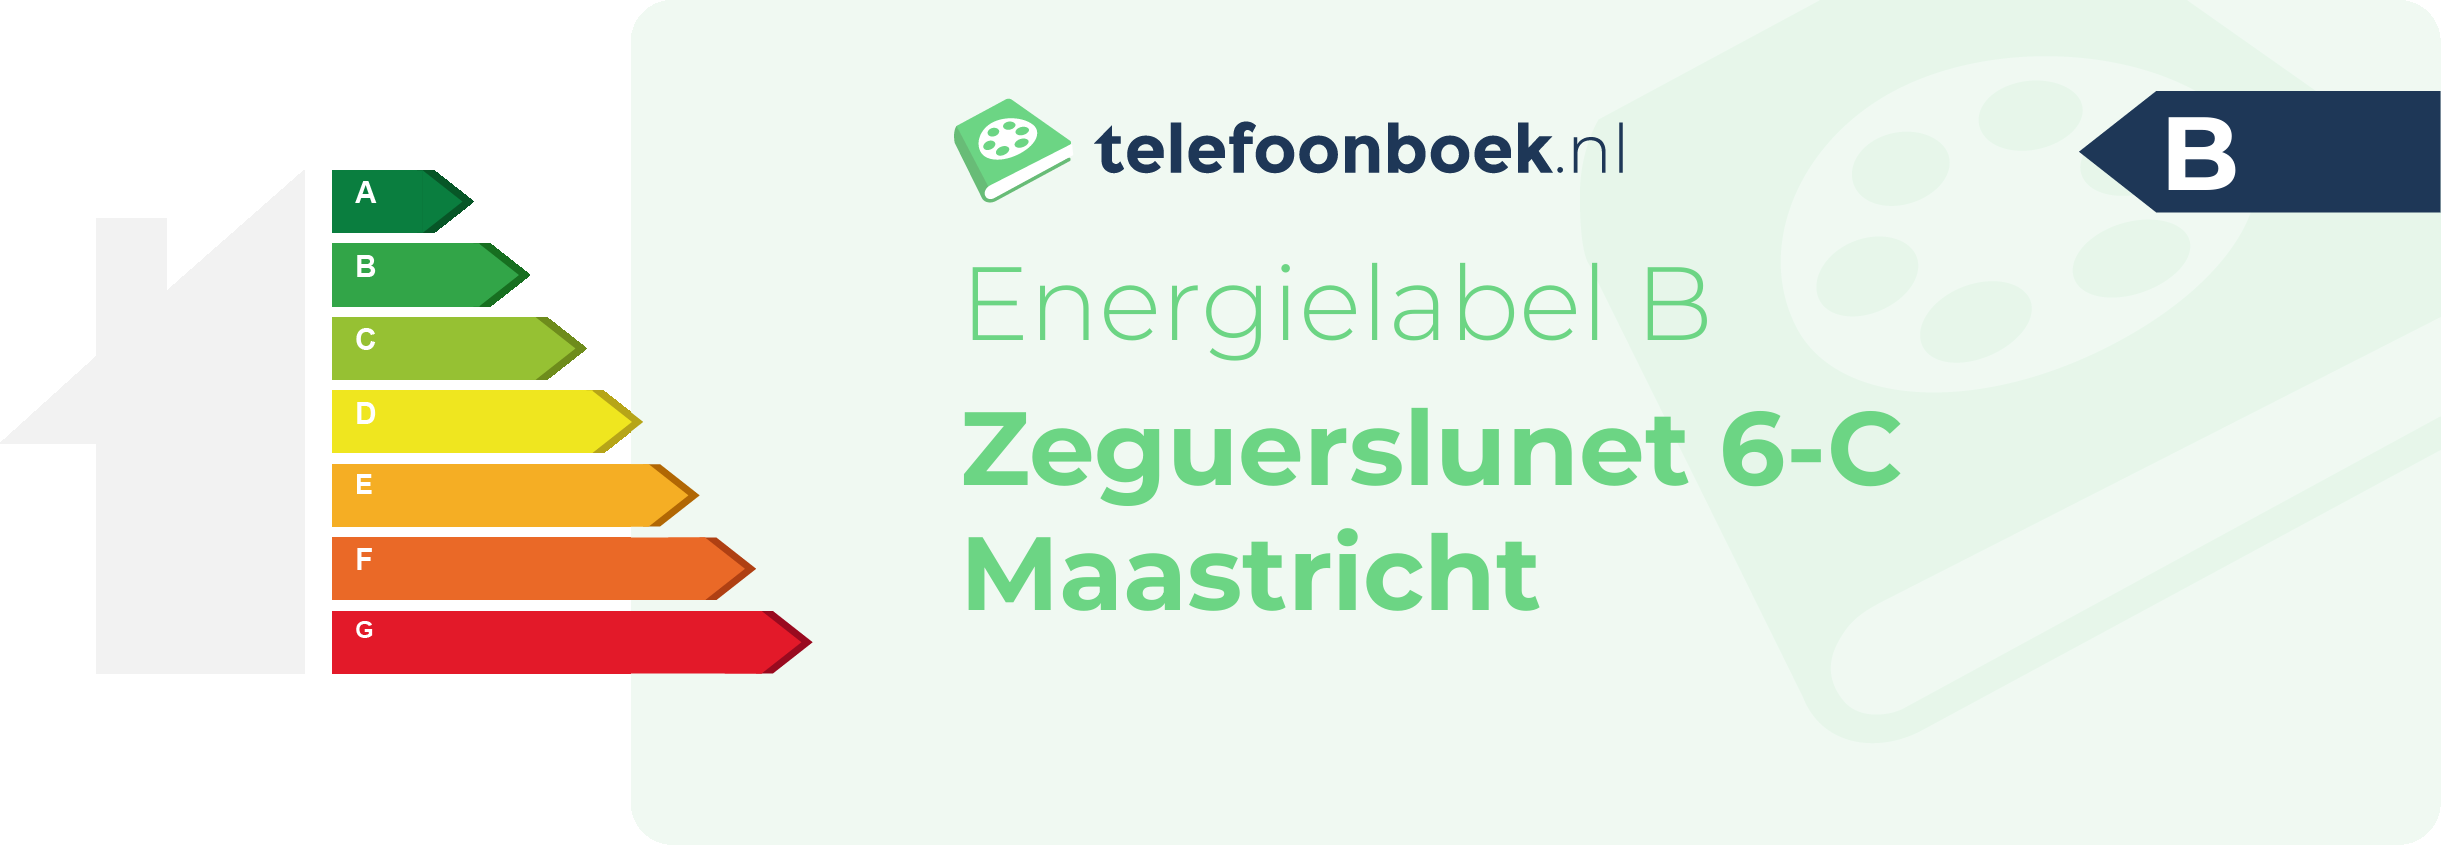 Energielabel Zeguerslunet 6-C Maastricht